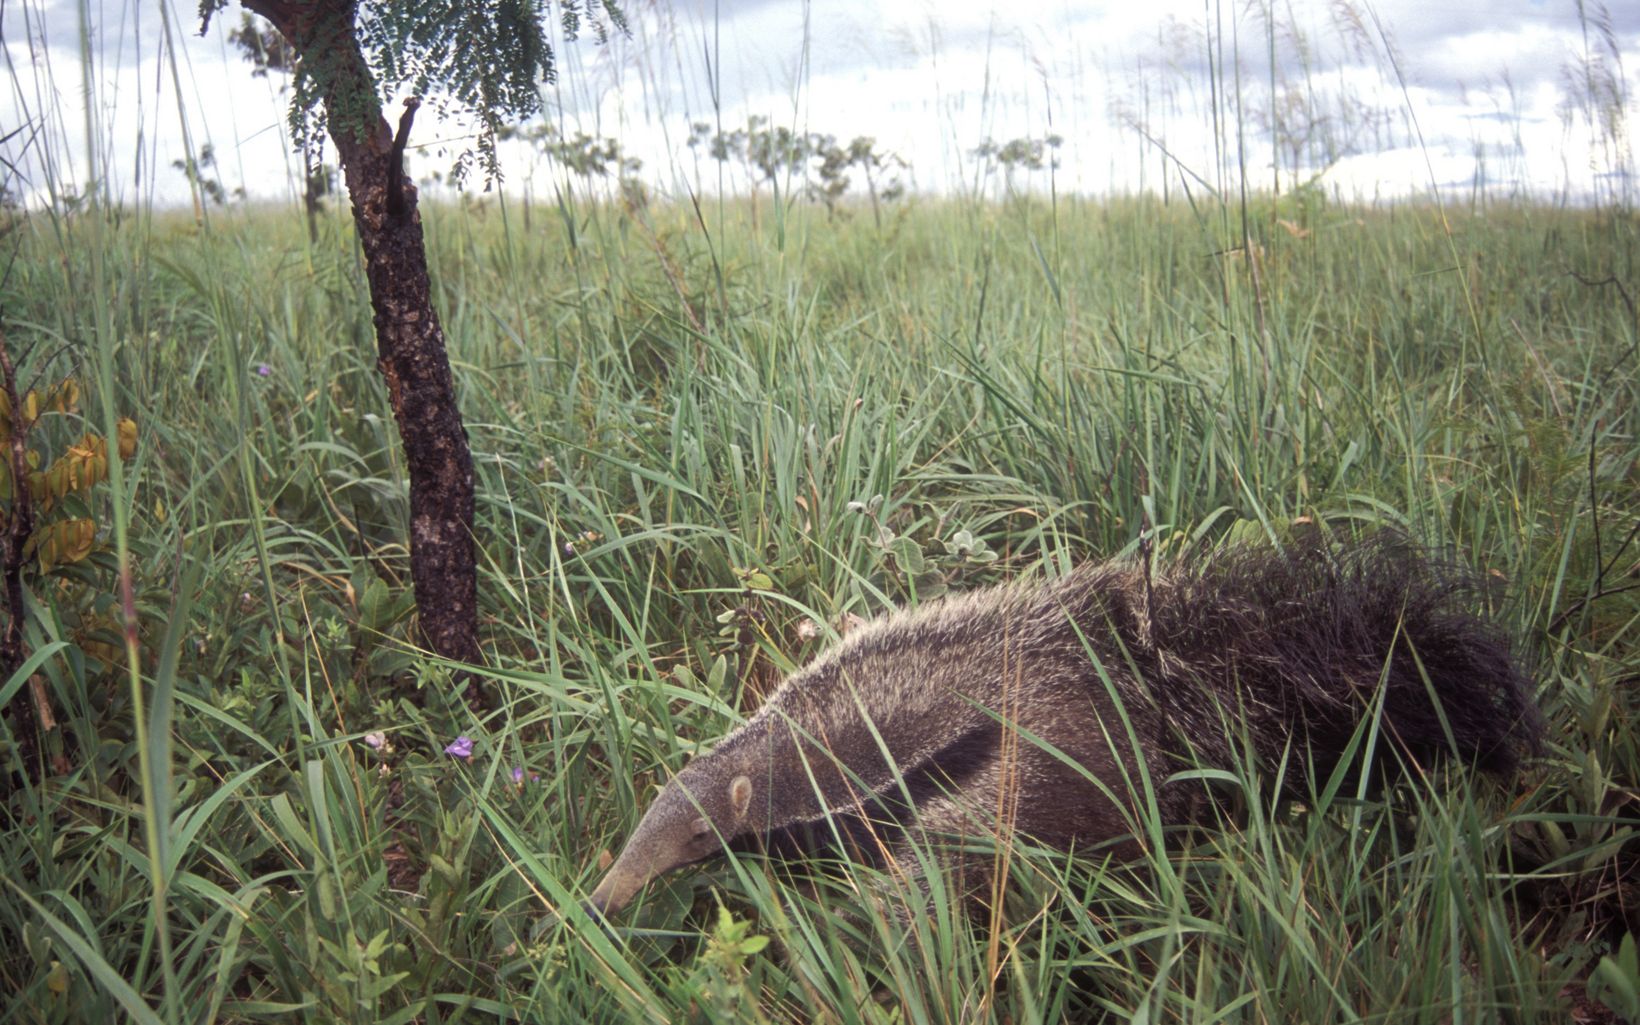 O Cerrado abriga uma grande diversidade de espécies, como o Tamanduá.